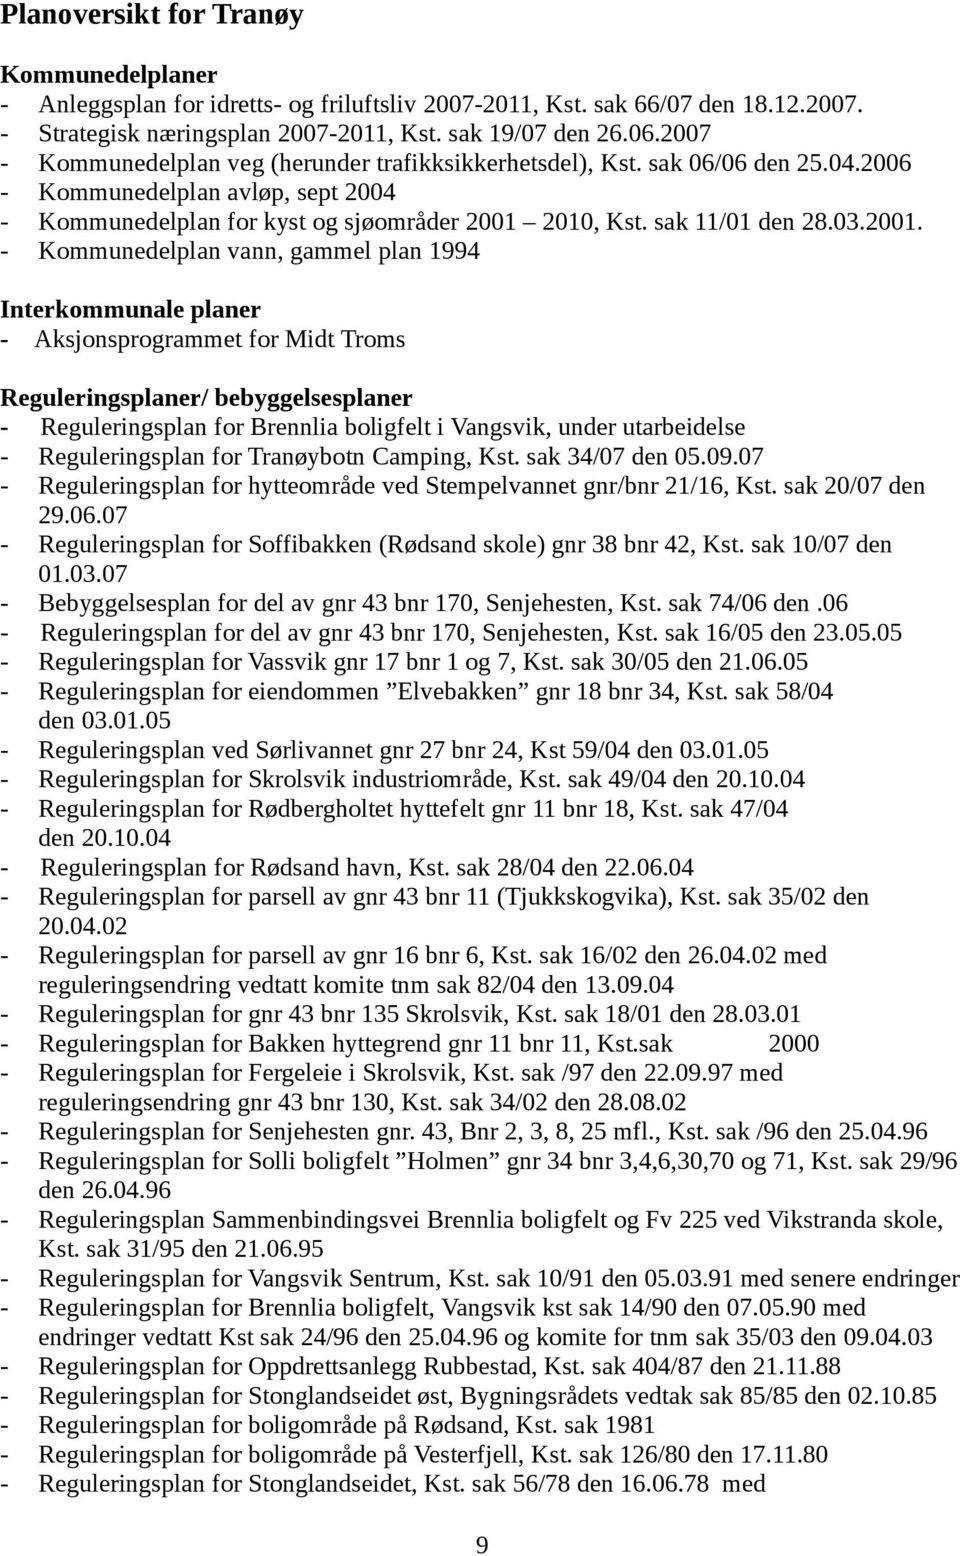 2001. - Kommunedelplan vann, gammel plan 1994 Interkommunale planer - Aksjonsprogrammet for Midt Troms Reguleringsplaner/ bebyggelsesplaner - Reguleringsplan for Brennlia boligfelt i Vangsvik, under